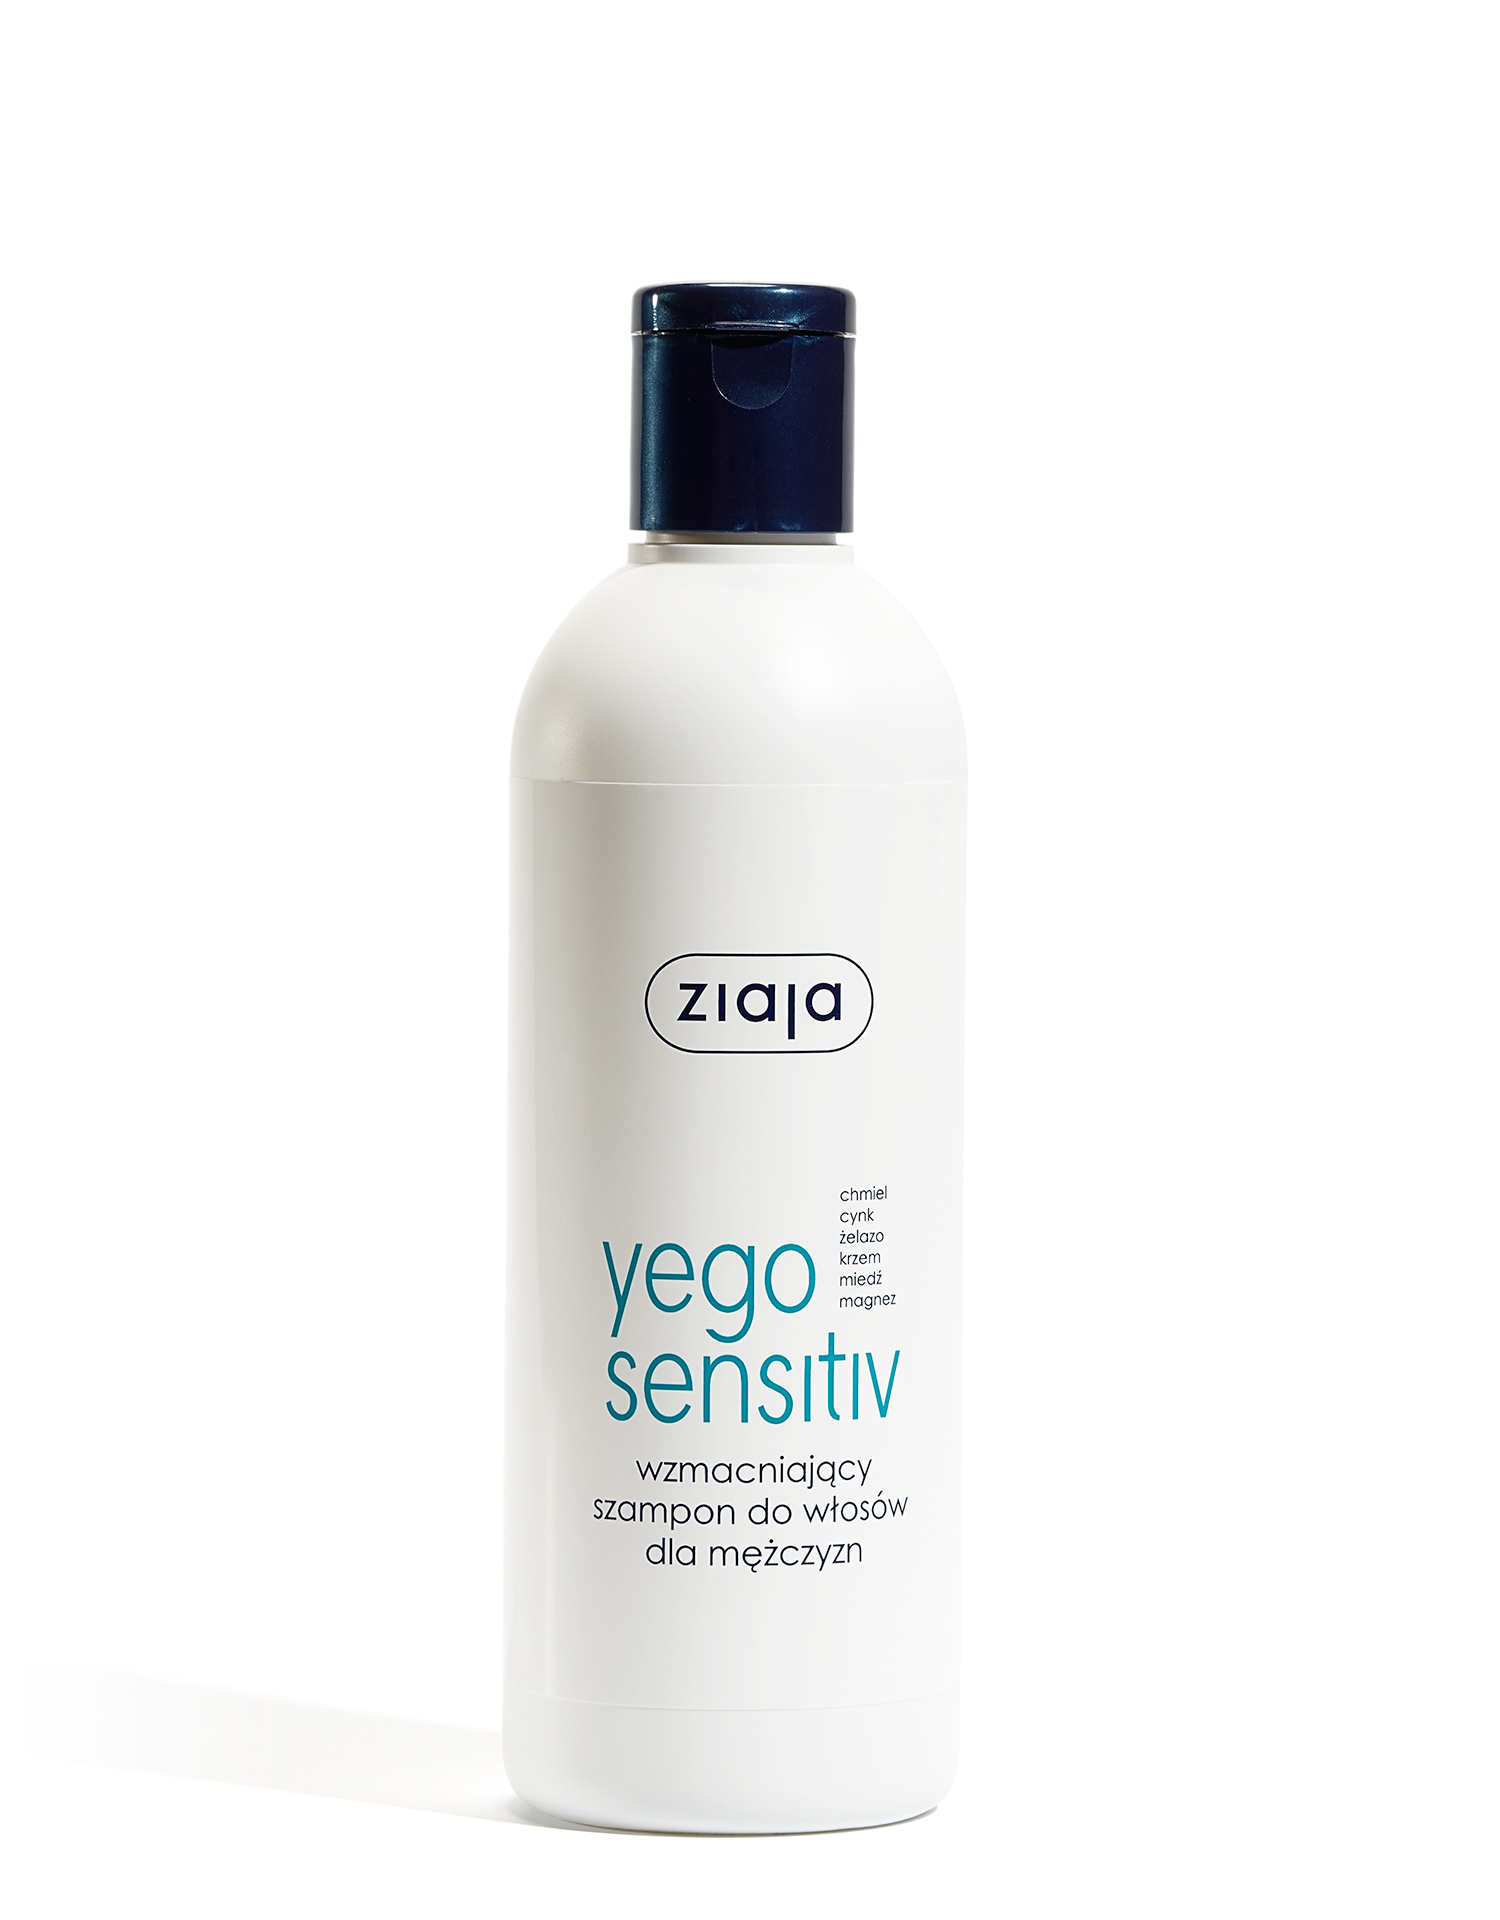 ziaja yego sensitiv wzmacniający szampon 300ml